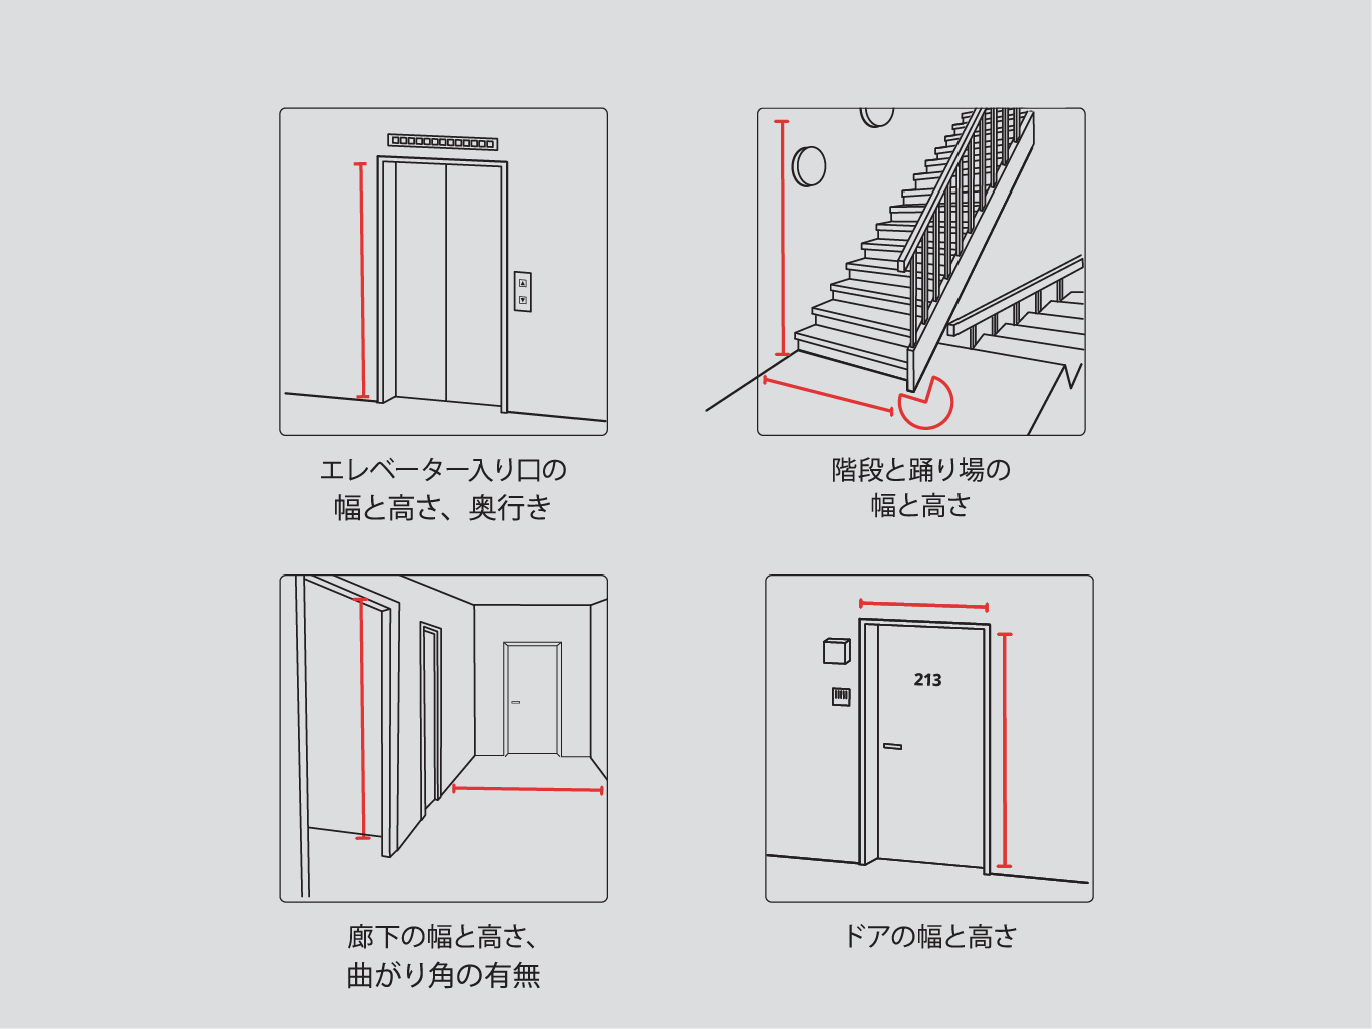 Fyra tecknade bilder visar hur man ska mäta höjd och svängradie i trapphus, dörröppningar och hiss.